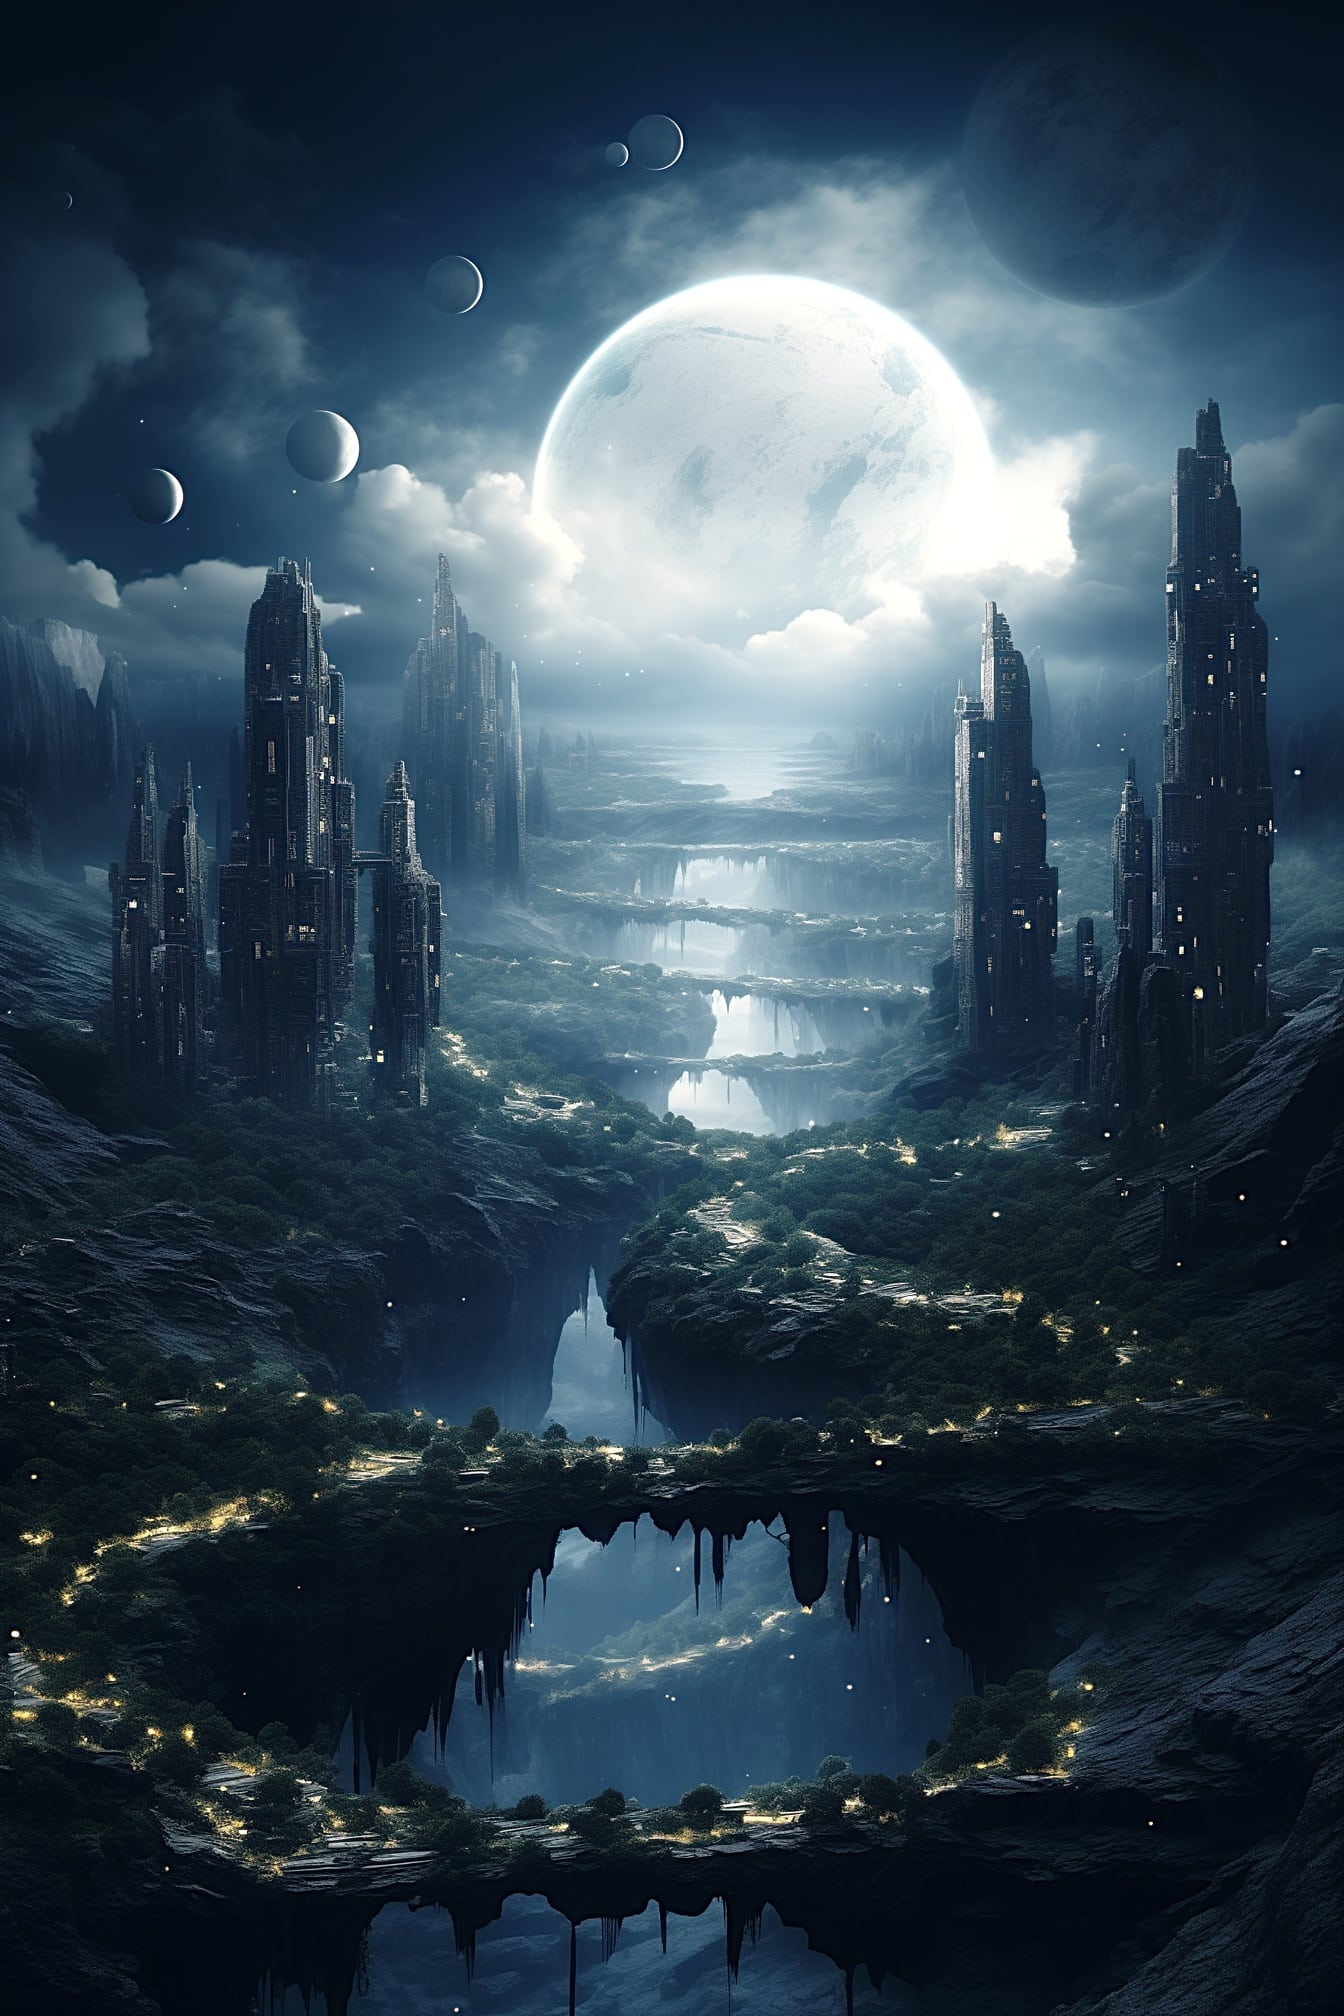 밤에는 하늘에 많은 달이 있는 꿈의 행성에 있는 마법의 달의 도시